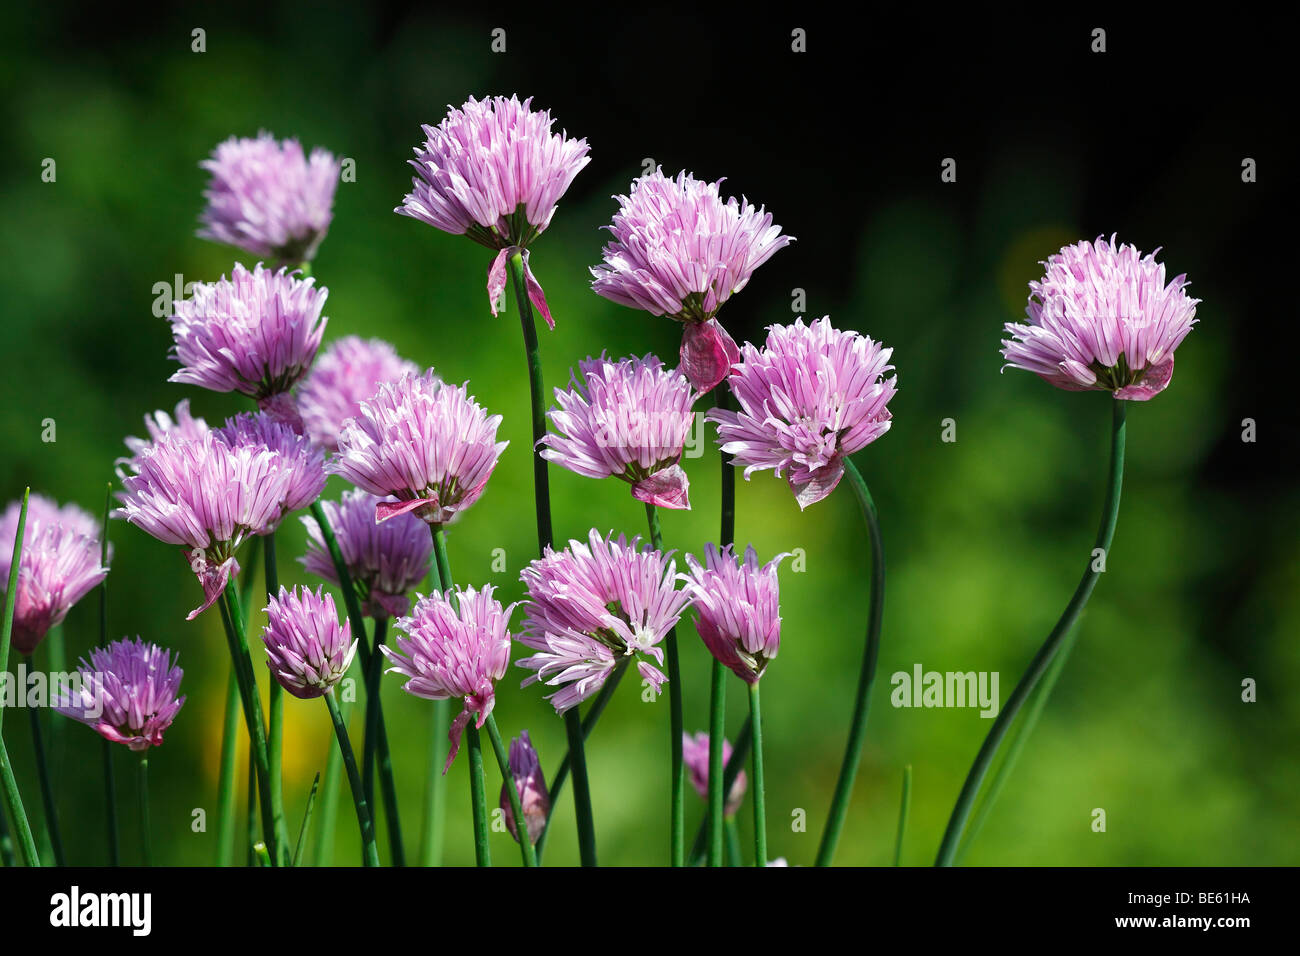 La floraison de la ciboulette (Allium schoenoprasum), usine d'épices Banque D'Images